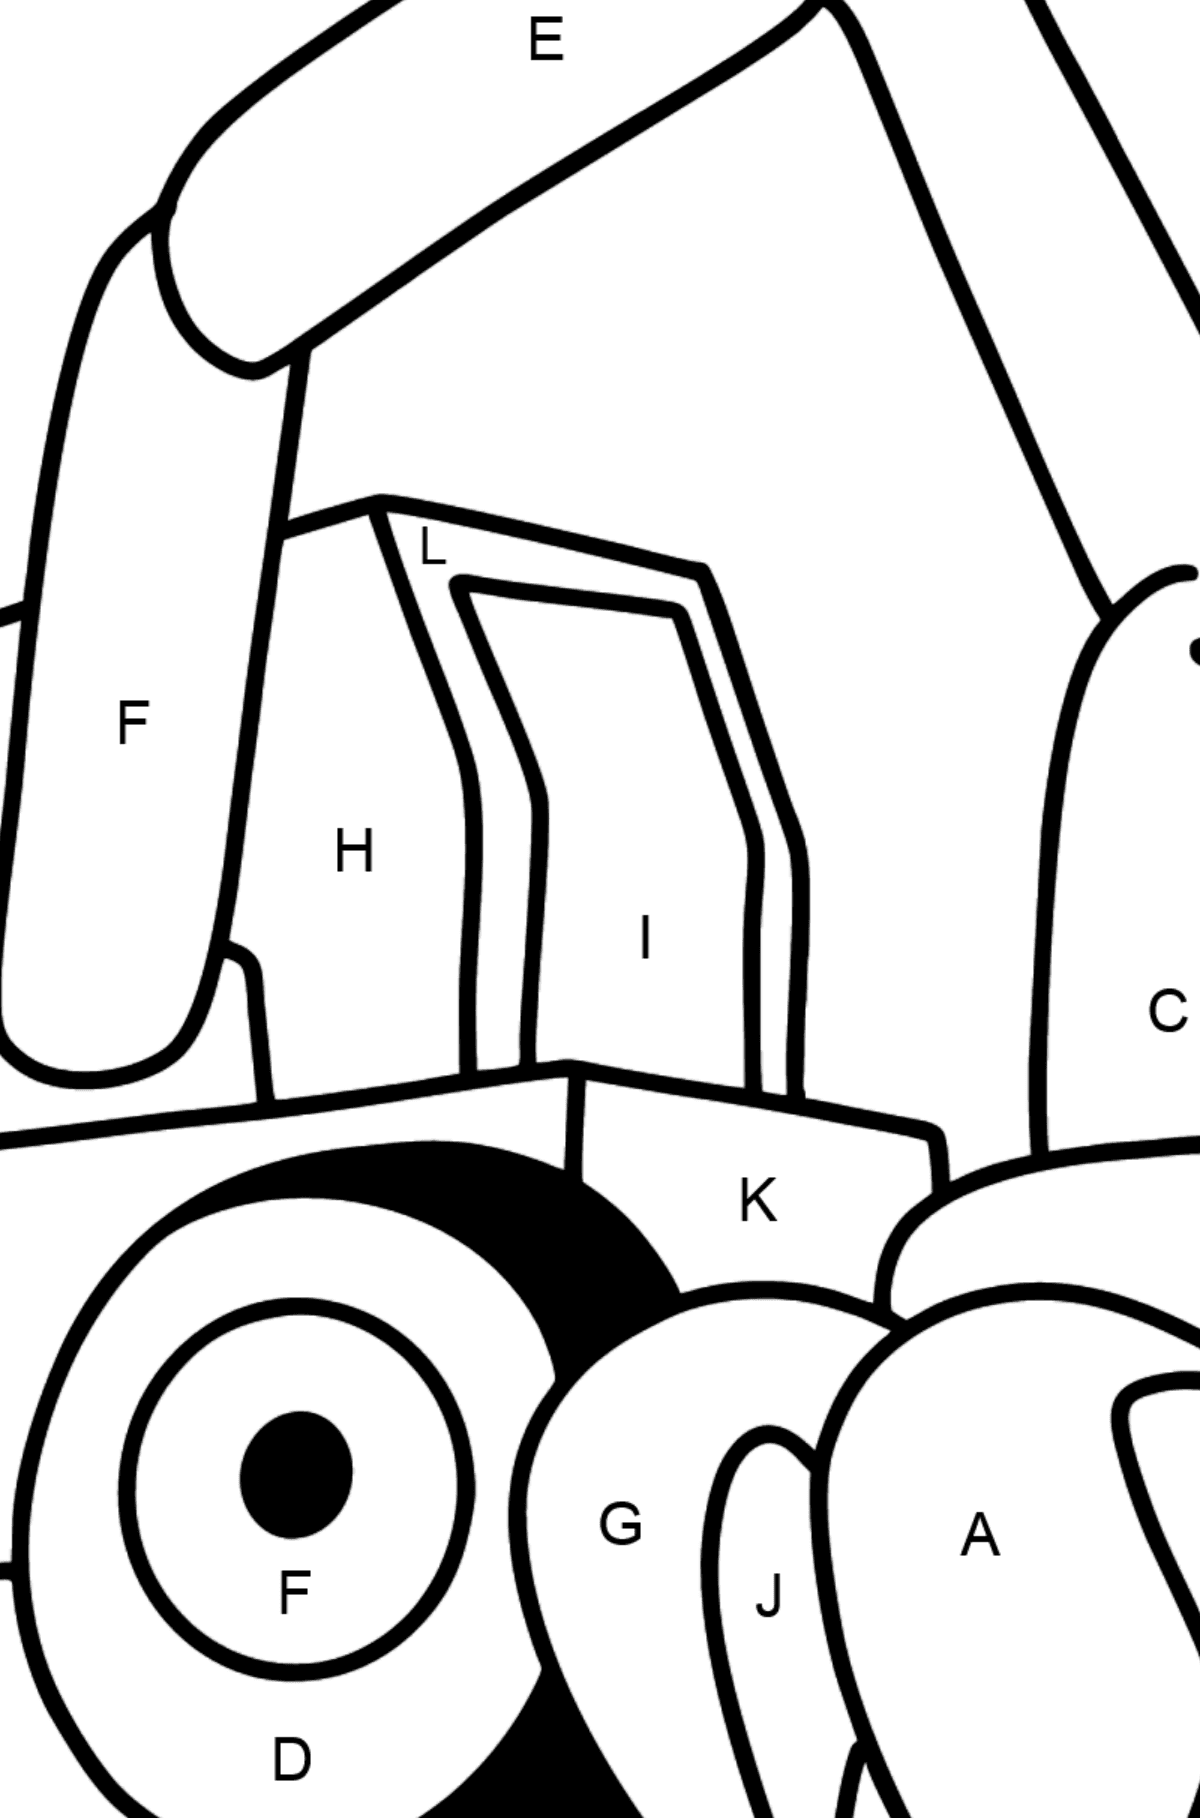 Coloriage - Tracteur de construction - Coloriage par Lettres pour les Enfants